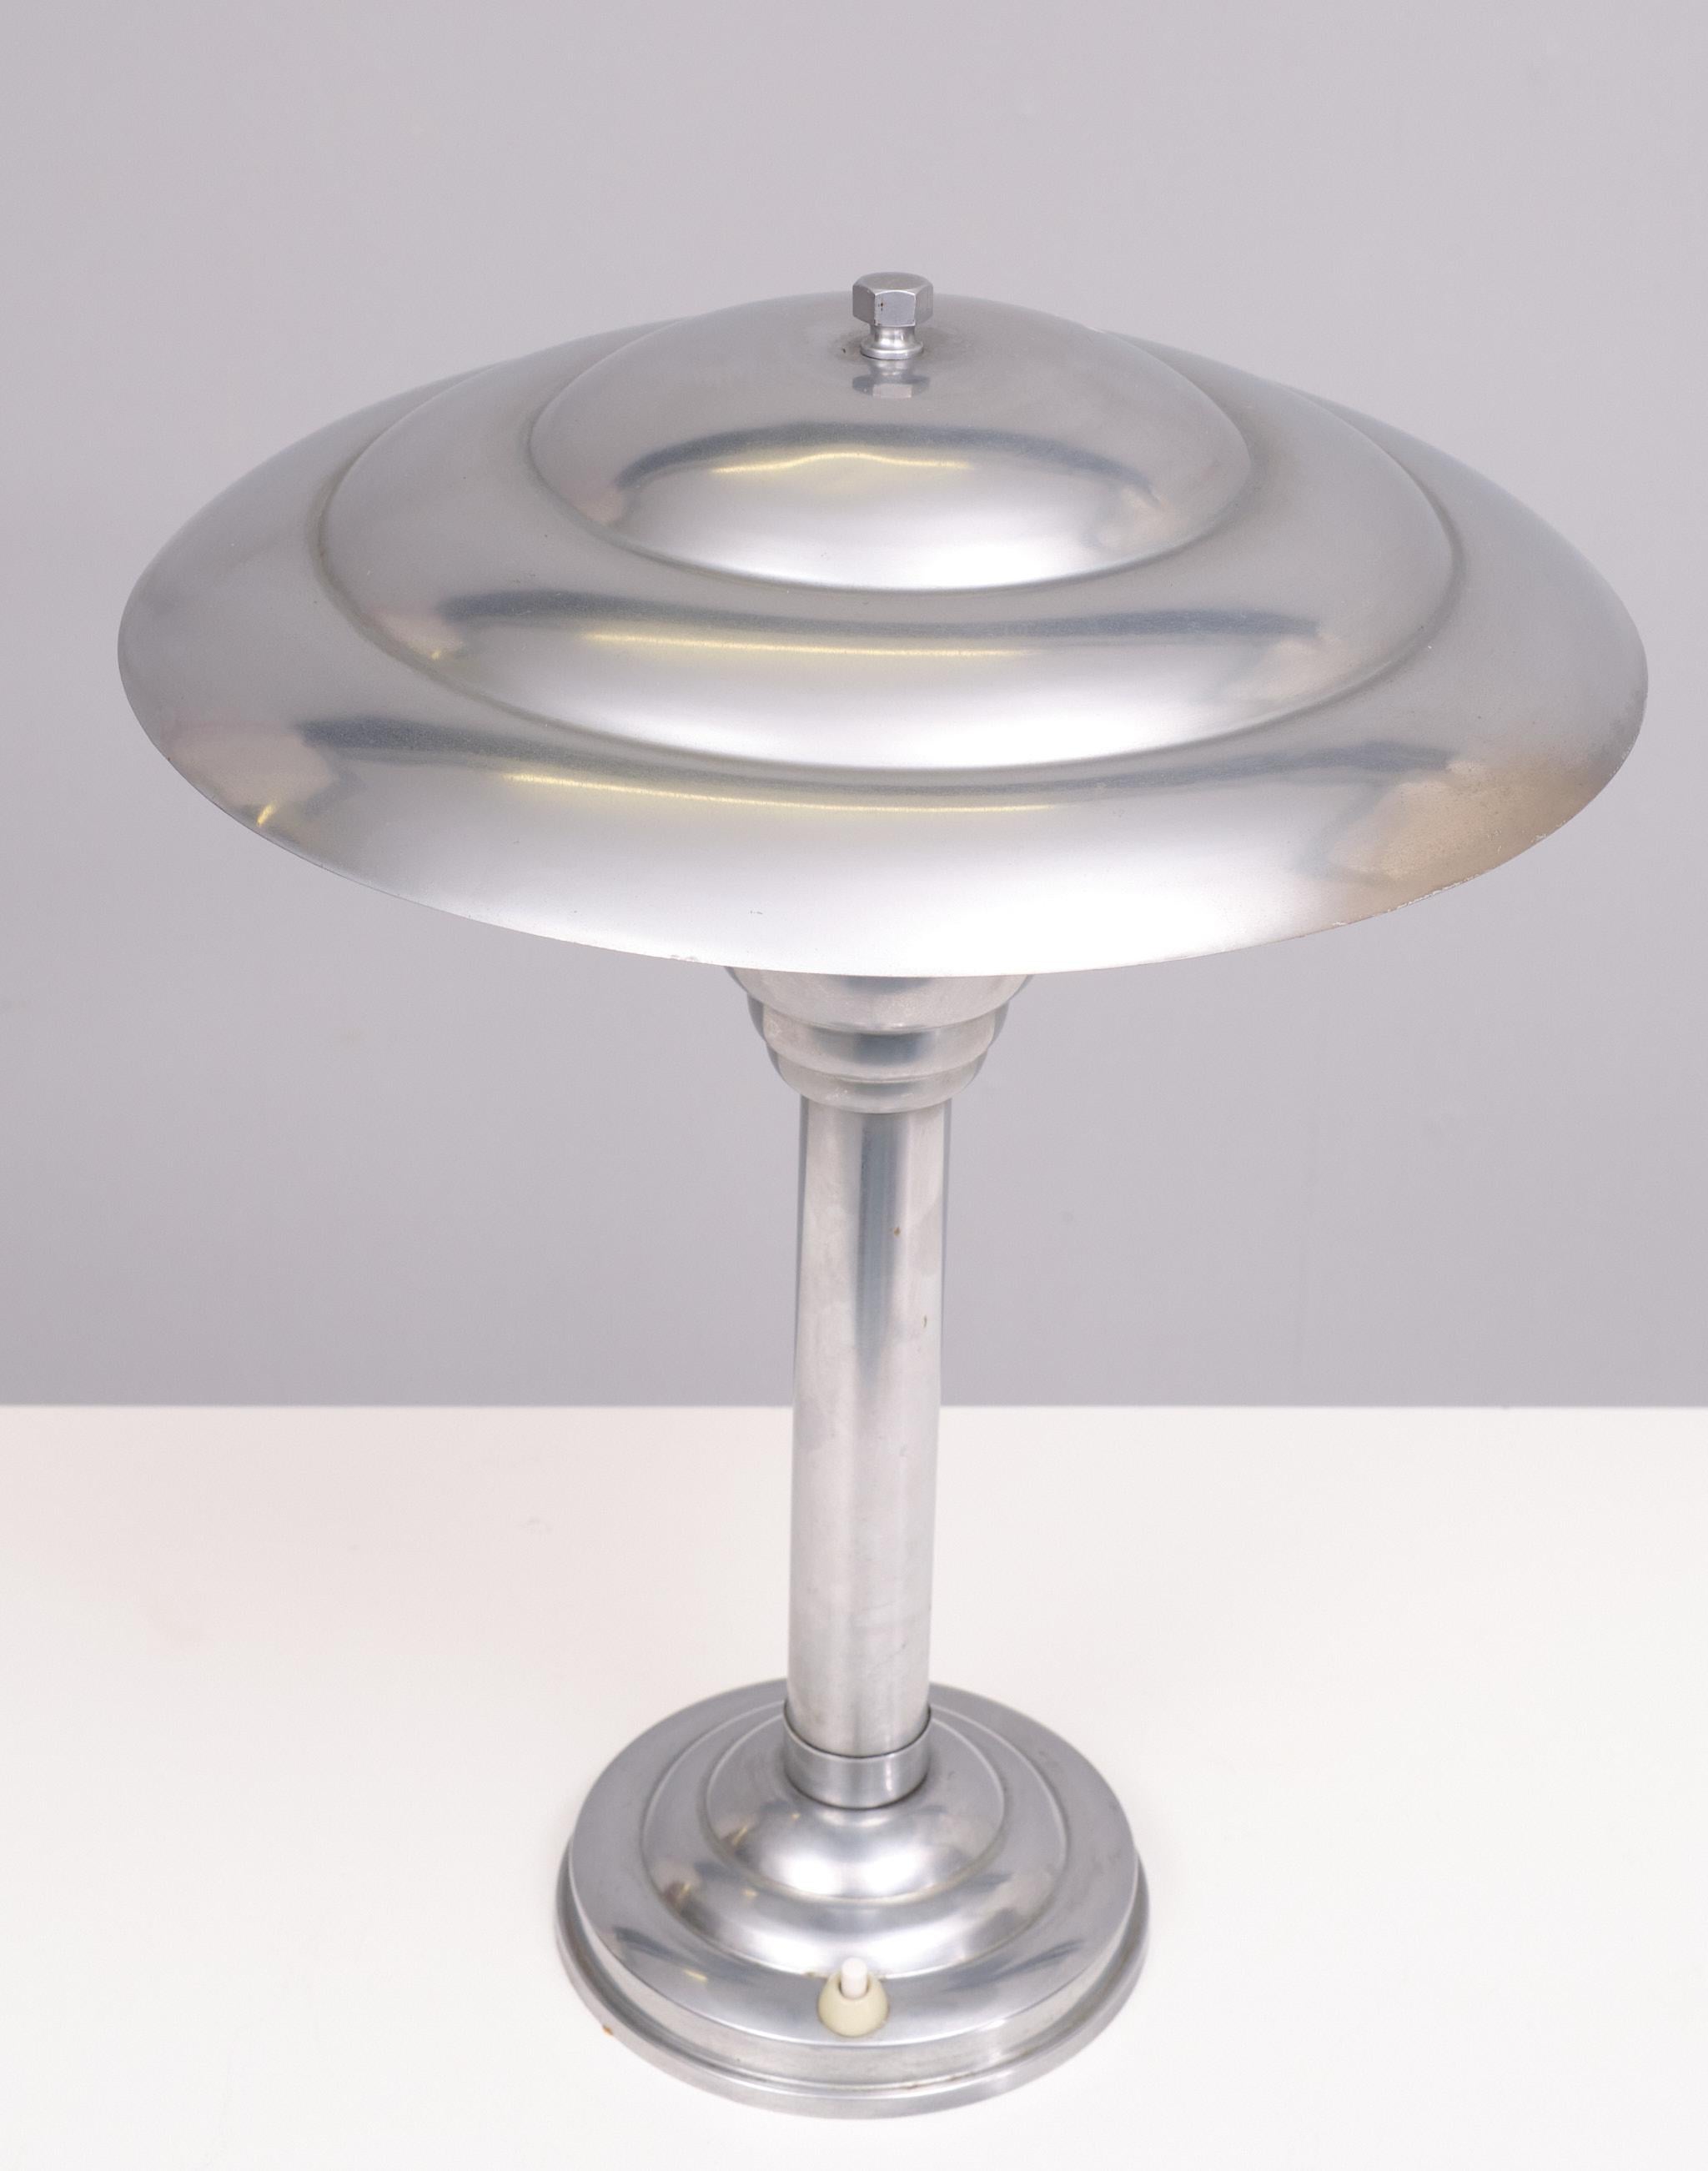 Original Art Deco Nickel Tischlampe . Kommt mit einem Kugelgelenk im oberen Teil des Schirms.
Noch in einem sehr guten Zustand, eine große E27 Glühbirne benötigt. 